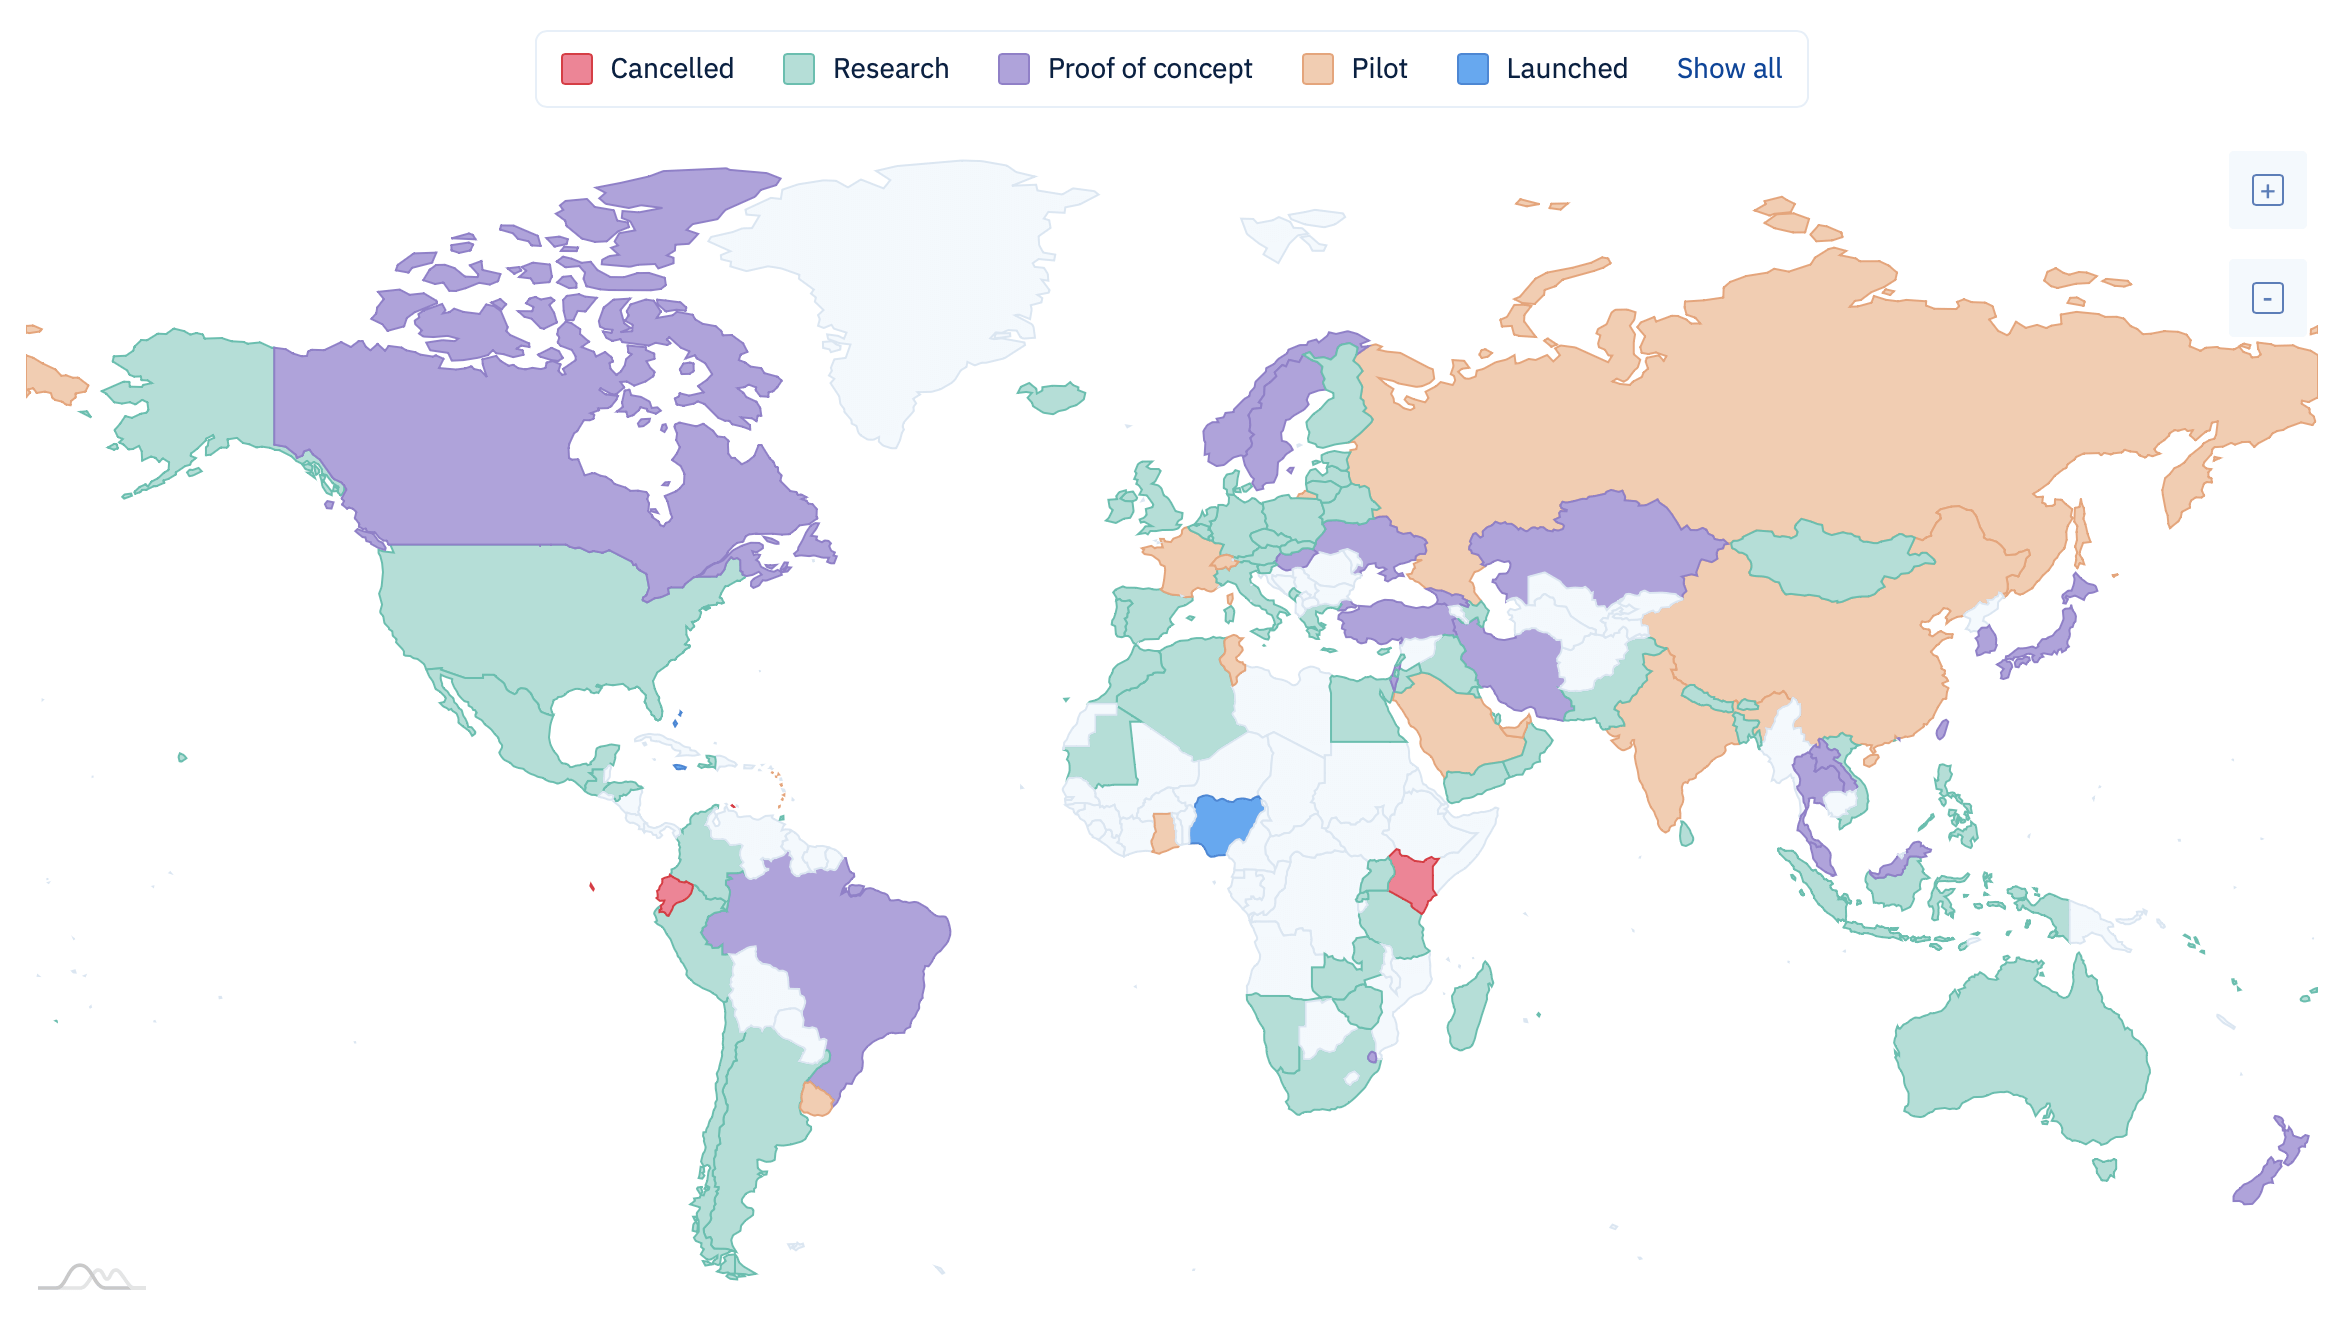 Сколько будет стоить Биткоин в будущем? Карта мира со статусом разработки CBDC в разных странах. Фото.